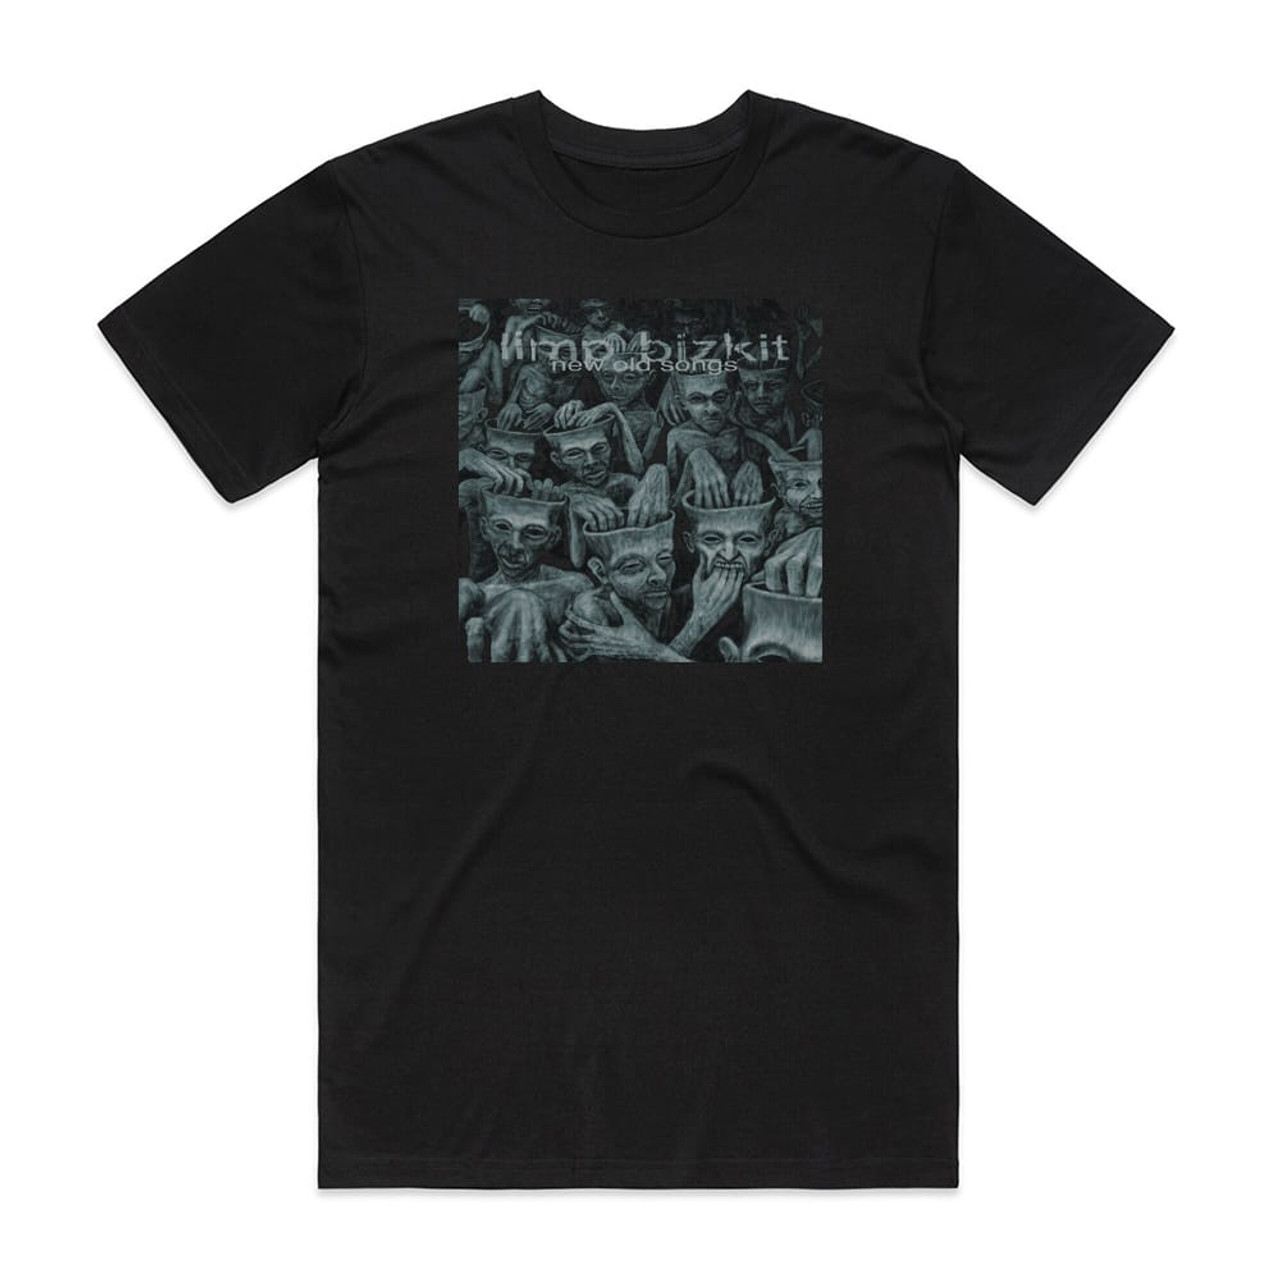 Limp Bizkit New Old Songs 1 Album Cover T-Shirt Black